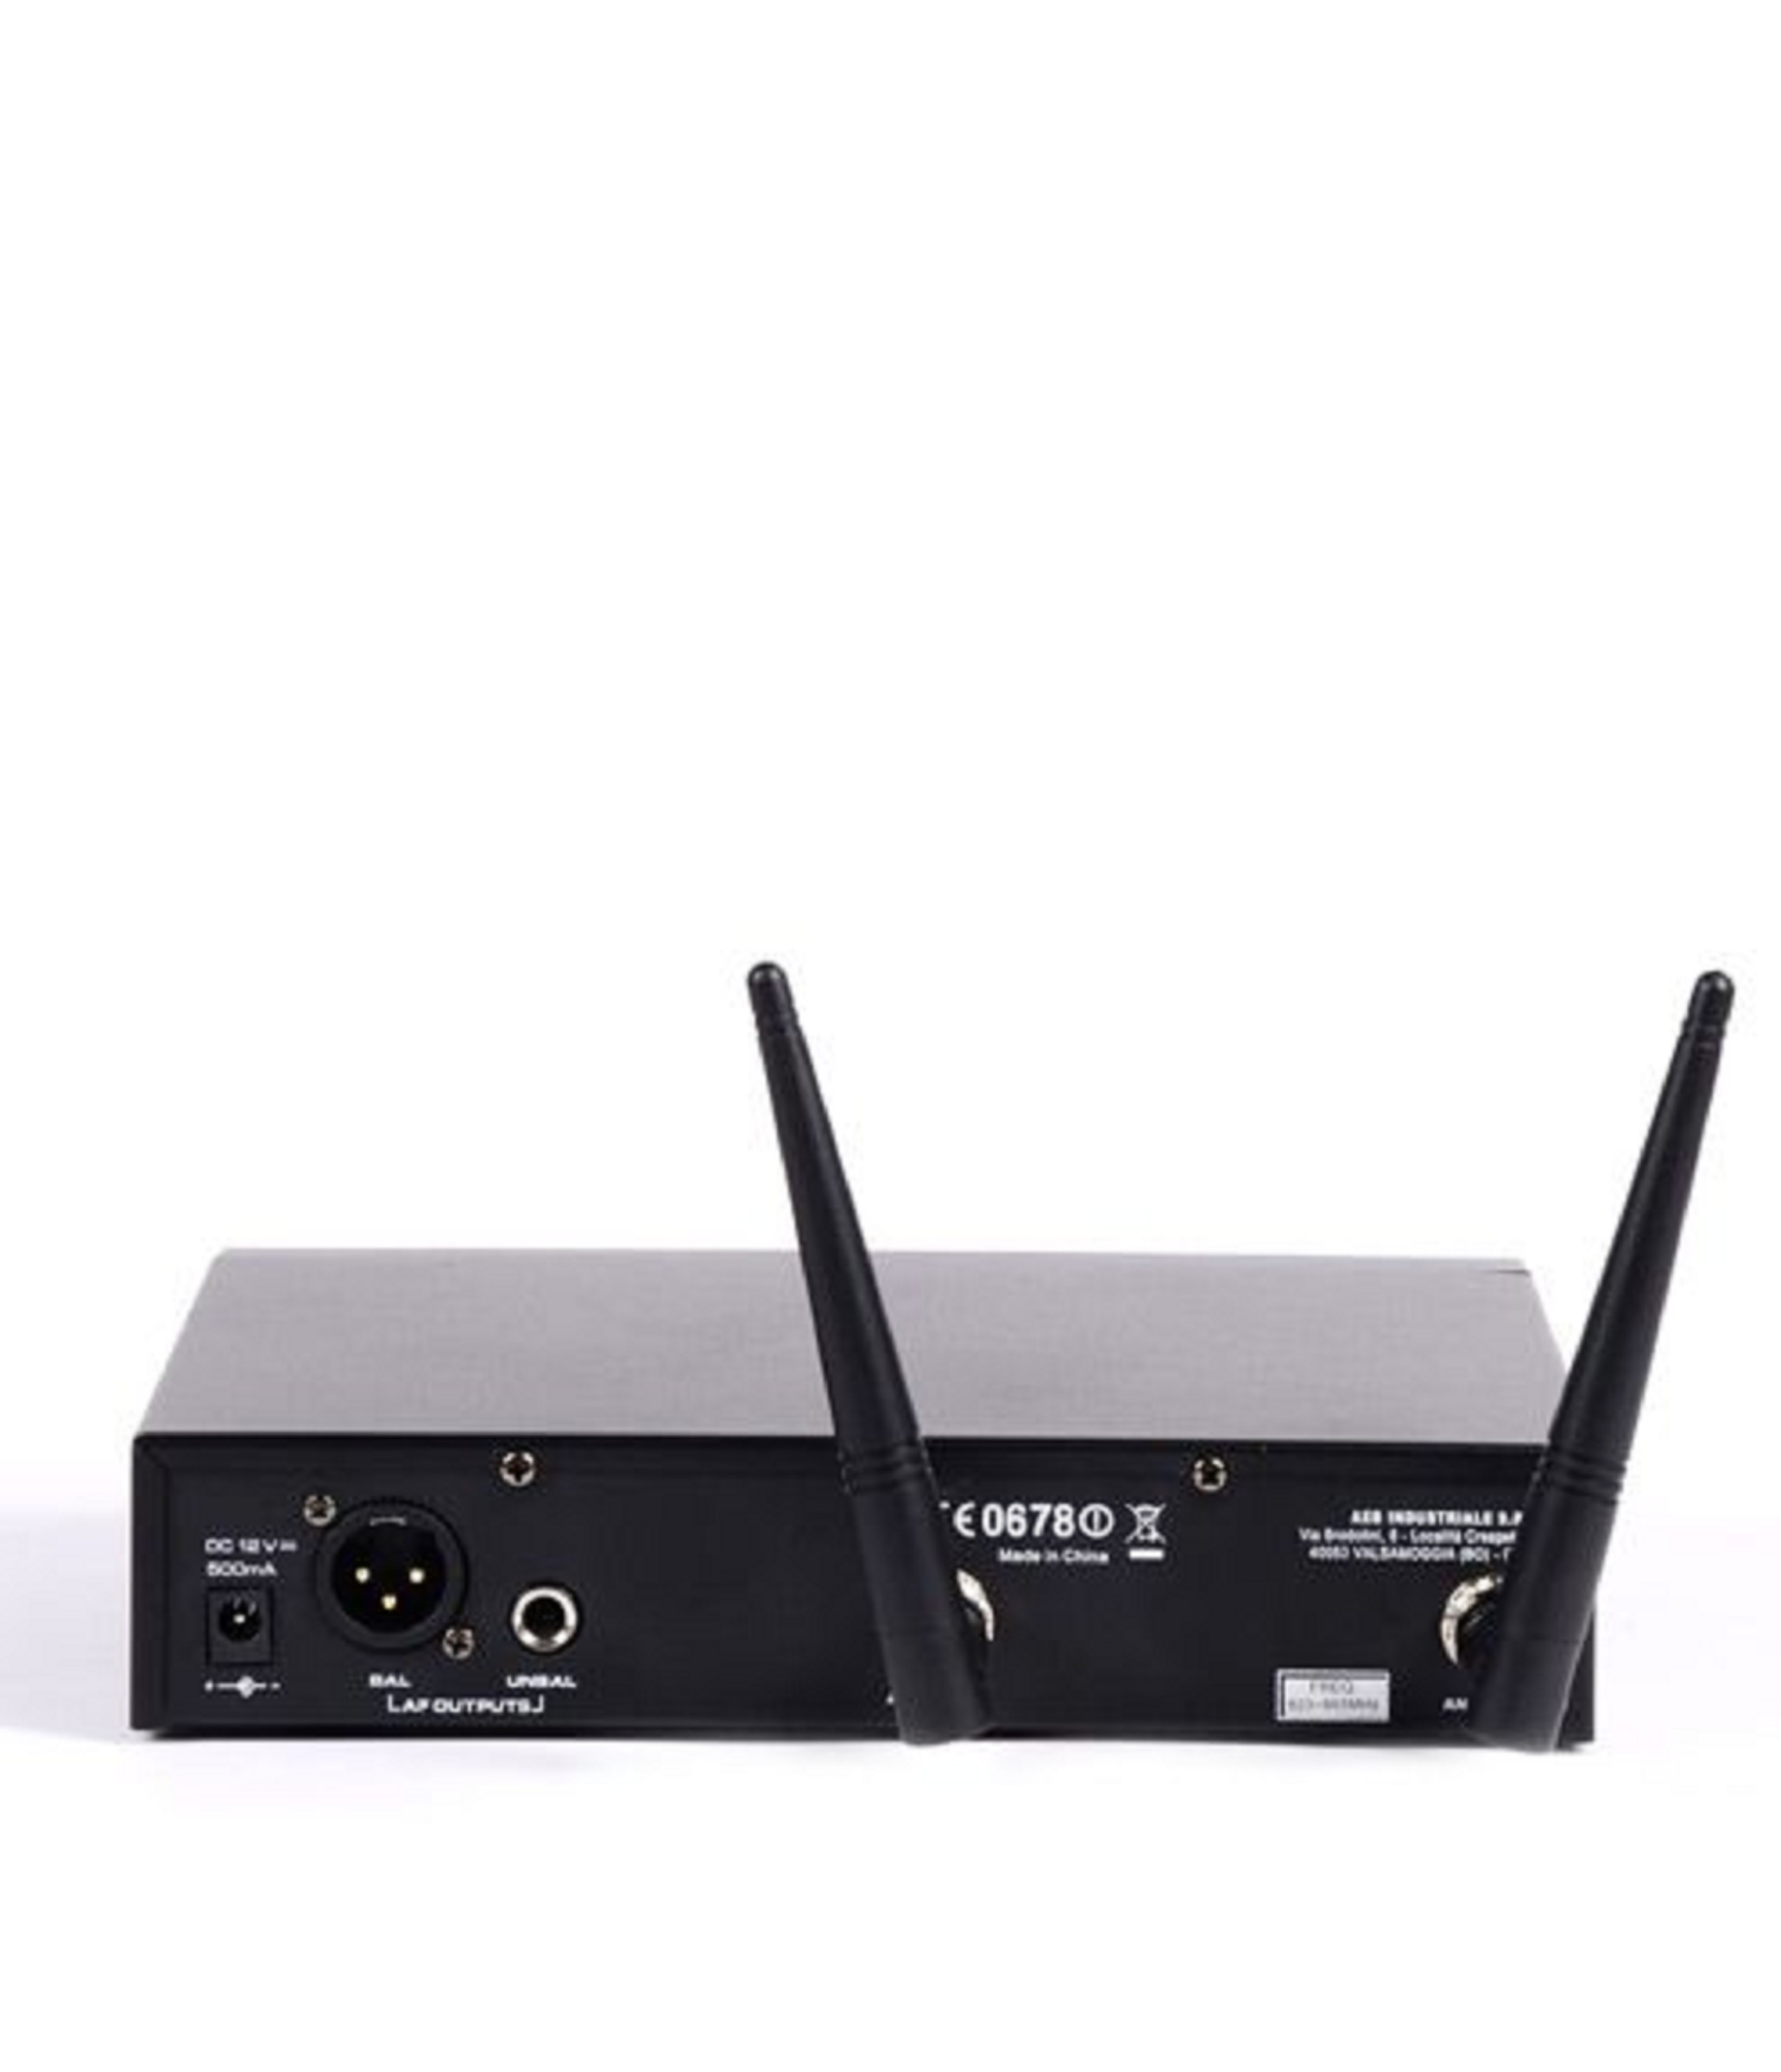 ANT UNO G8 HDM 1,8Ghz UHF Wireless System mit Handsender